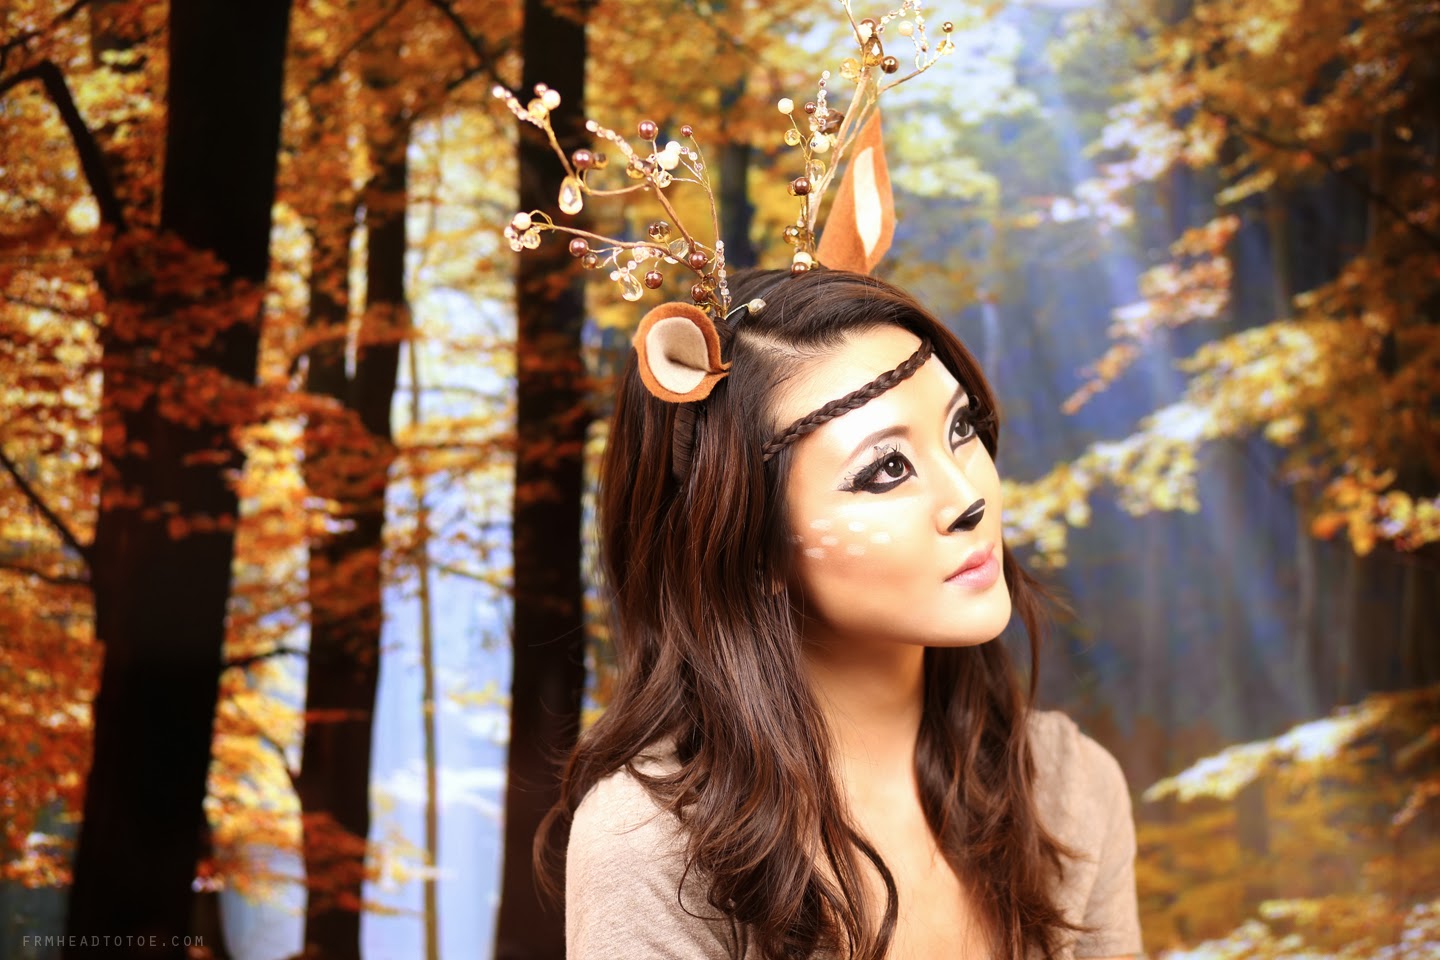 Deer Makeup Tutorial Halloween 2013 From Head To Toe